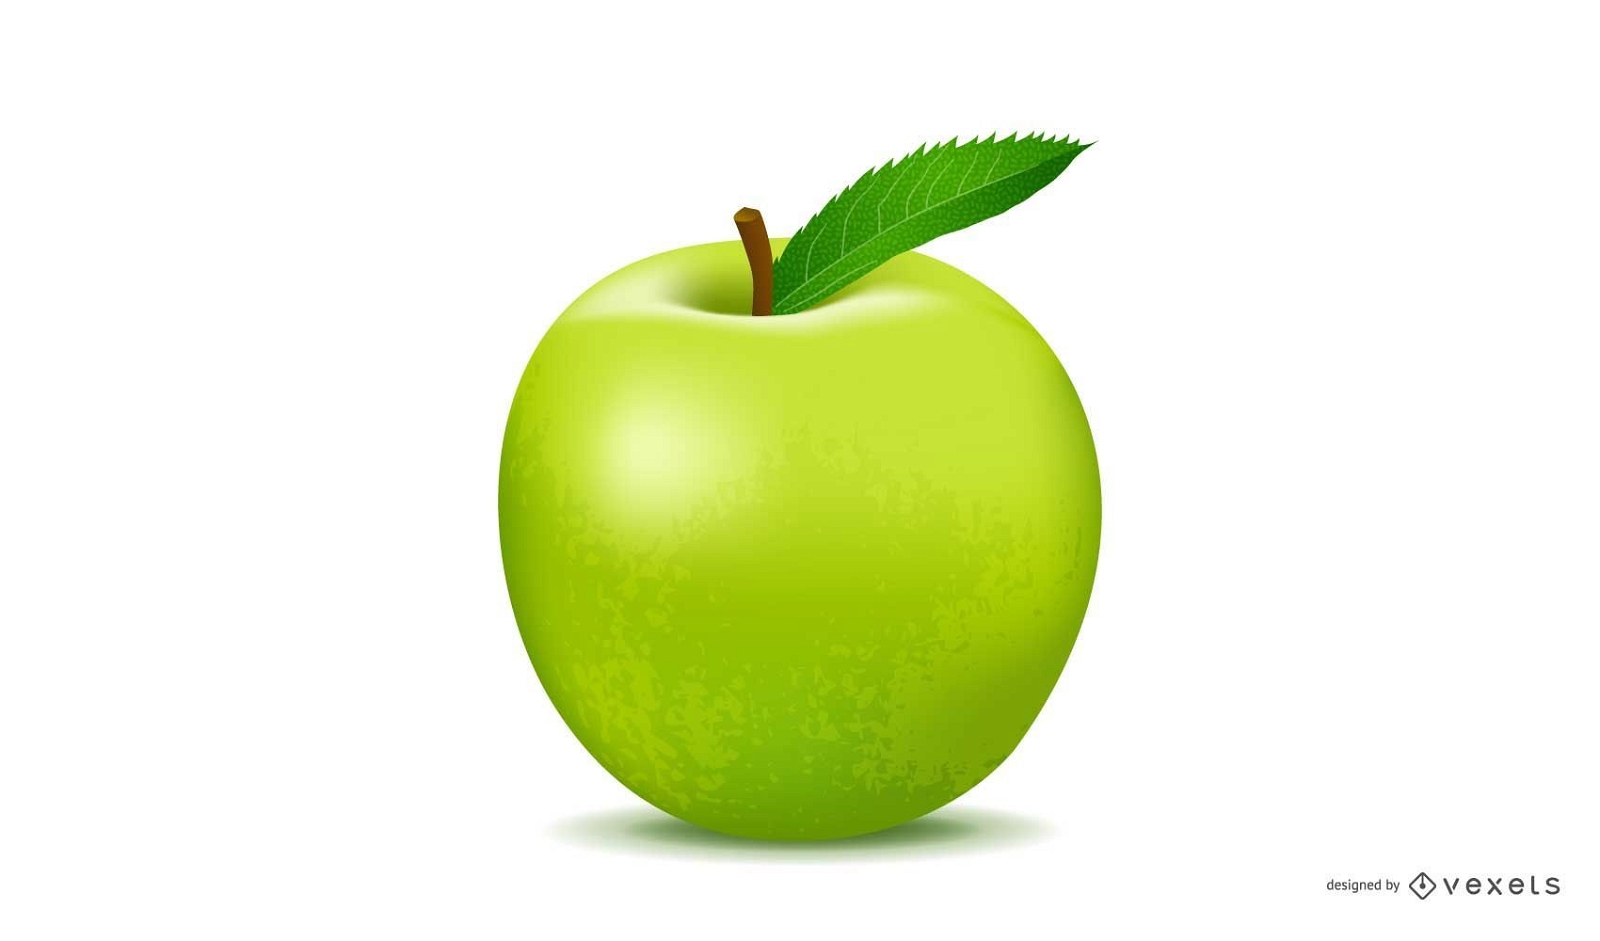 https://images.vexels.com/content/159134/preview/realistic-green-apple-vector-4d7e36.png